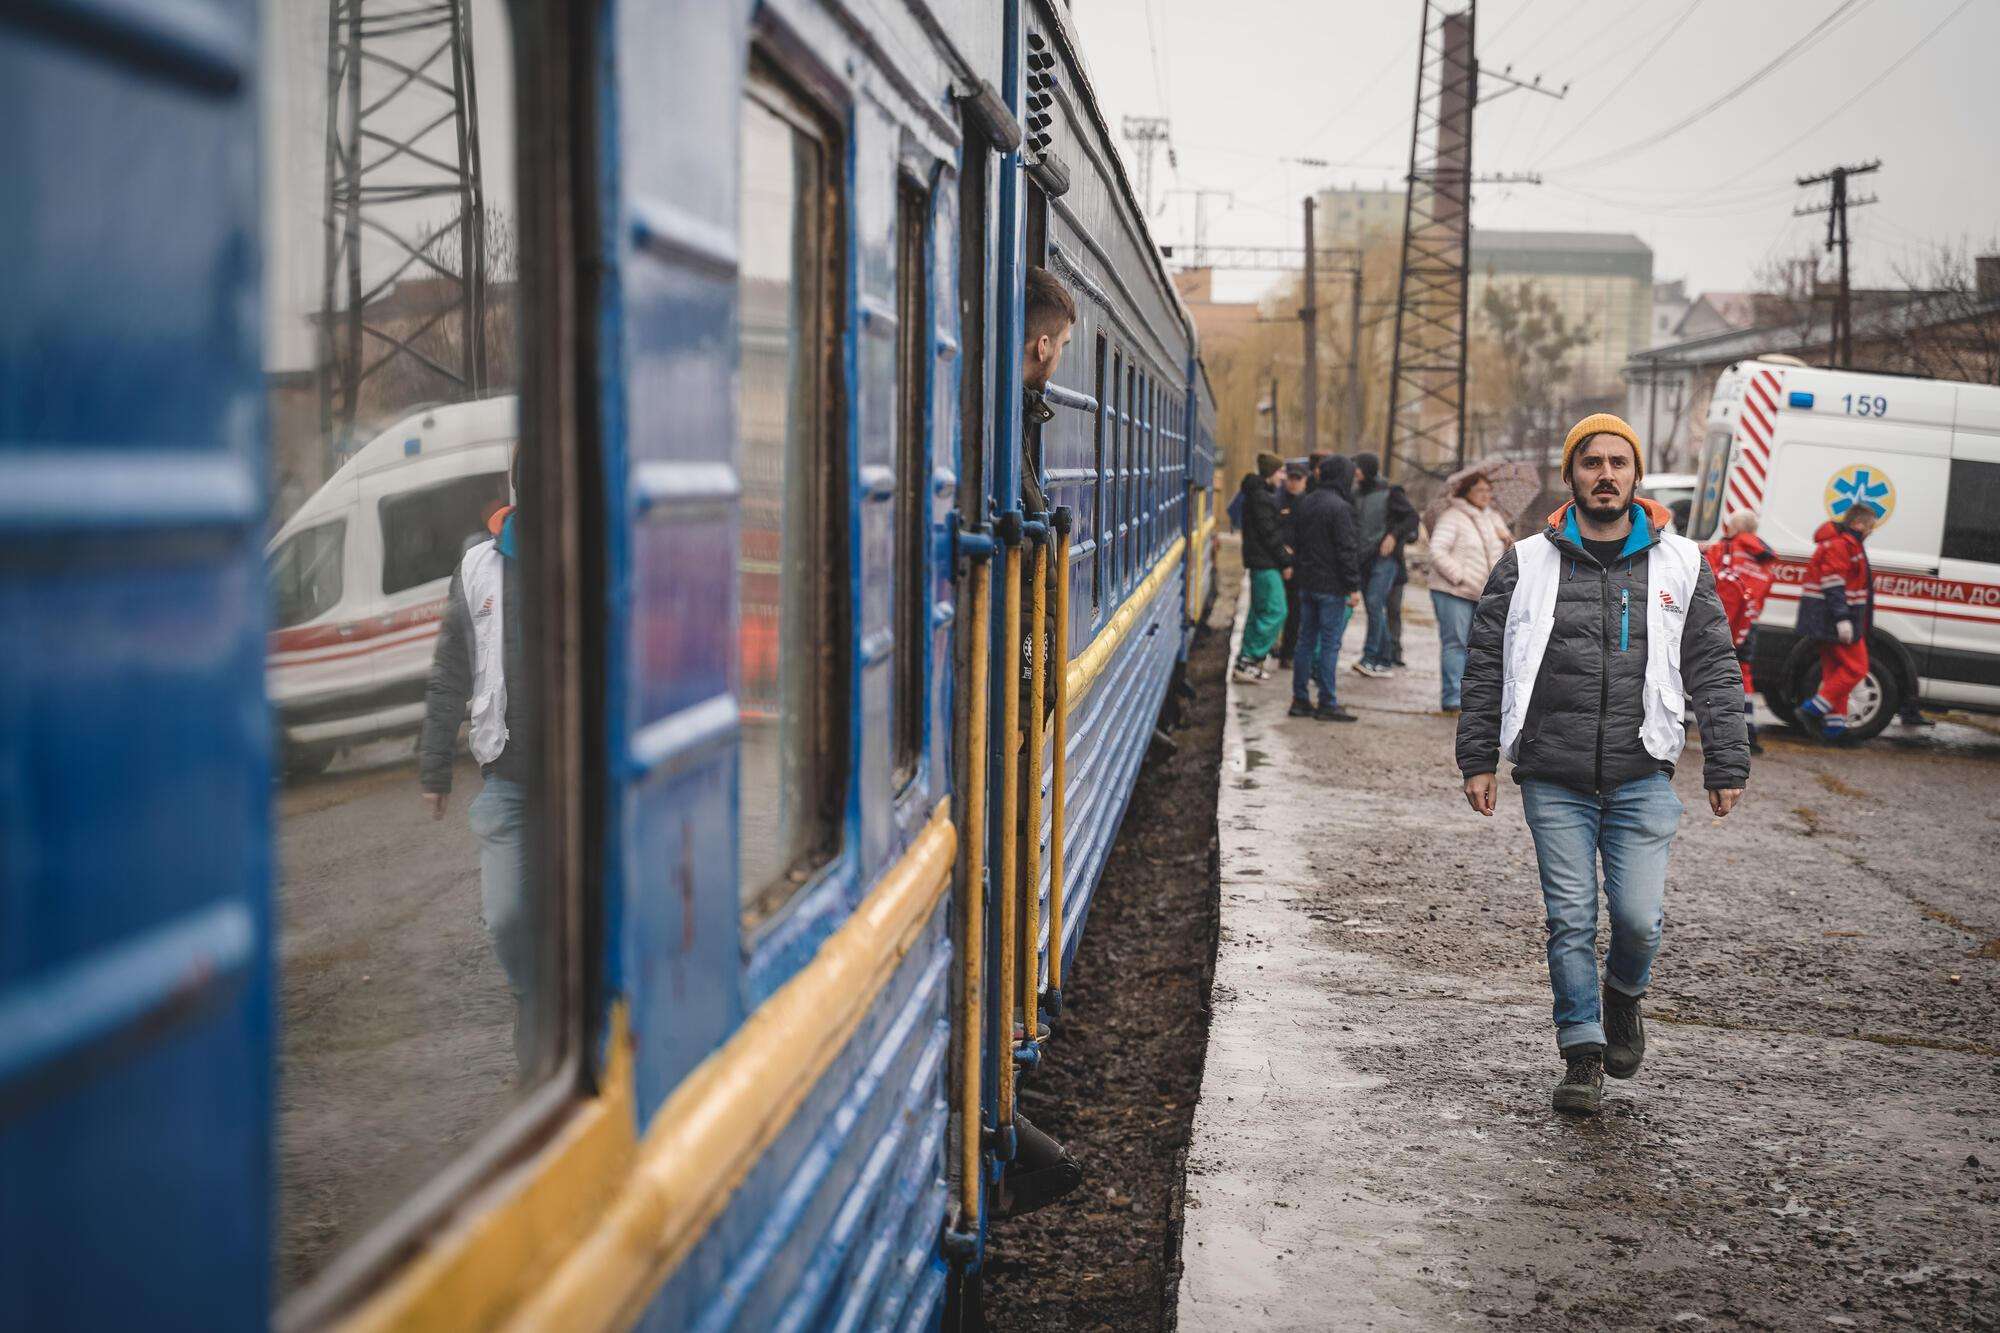 Ukraine - First train referral